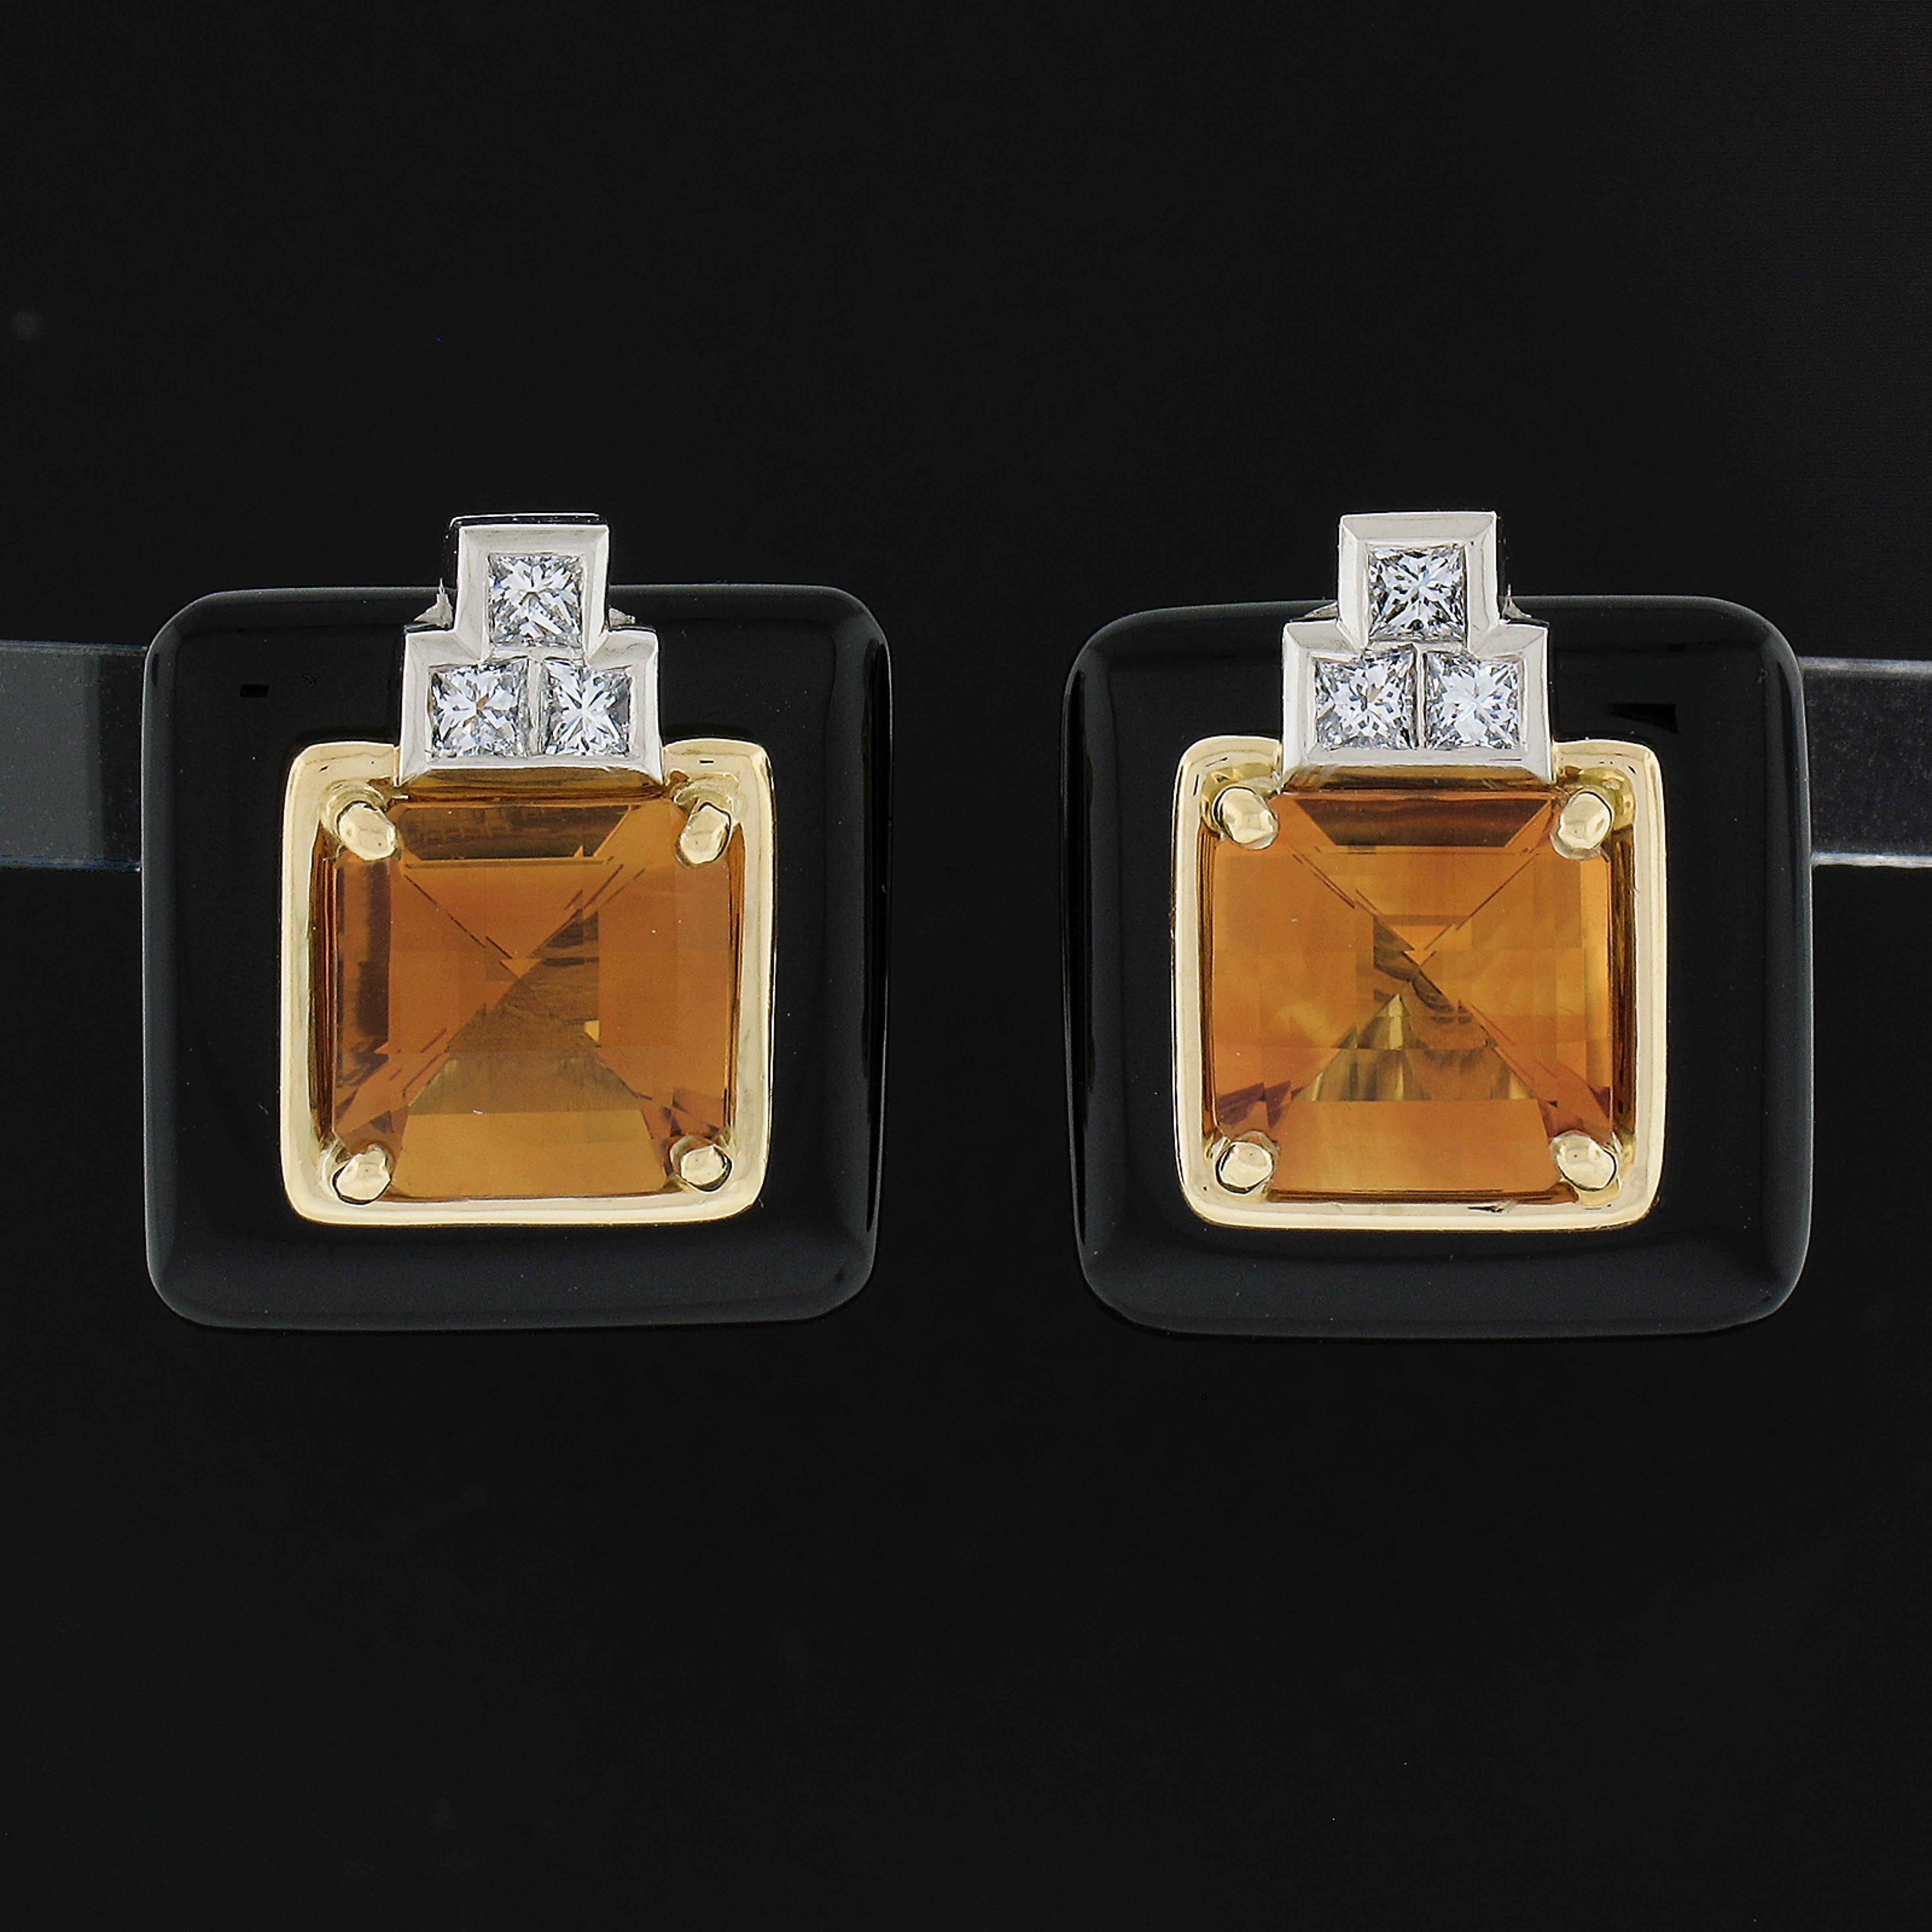 --Pierre(s) :...
(2) Onyx noir véritable naturel - taille personnalisée - couleur noire - 15,5x15,3 mm (environ)
(2) Citrine véritable naturelle - taille carrée en damier - sertie - riche couleur orange foncé - 8.1x8.1mm (approx.)
(6) Diamants